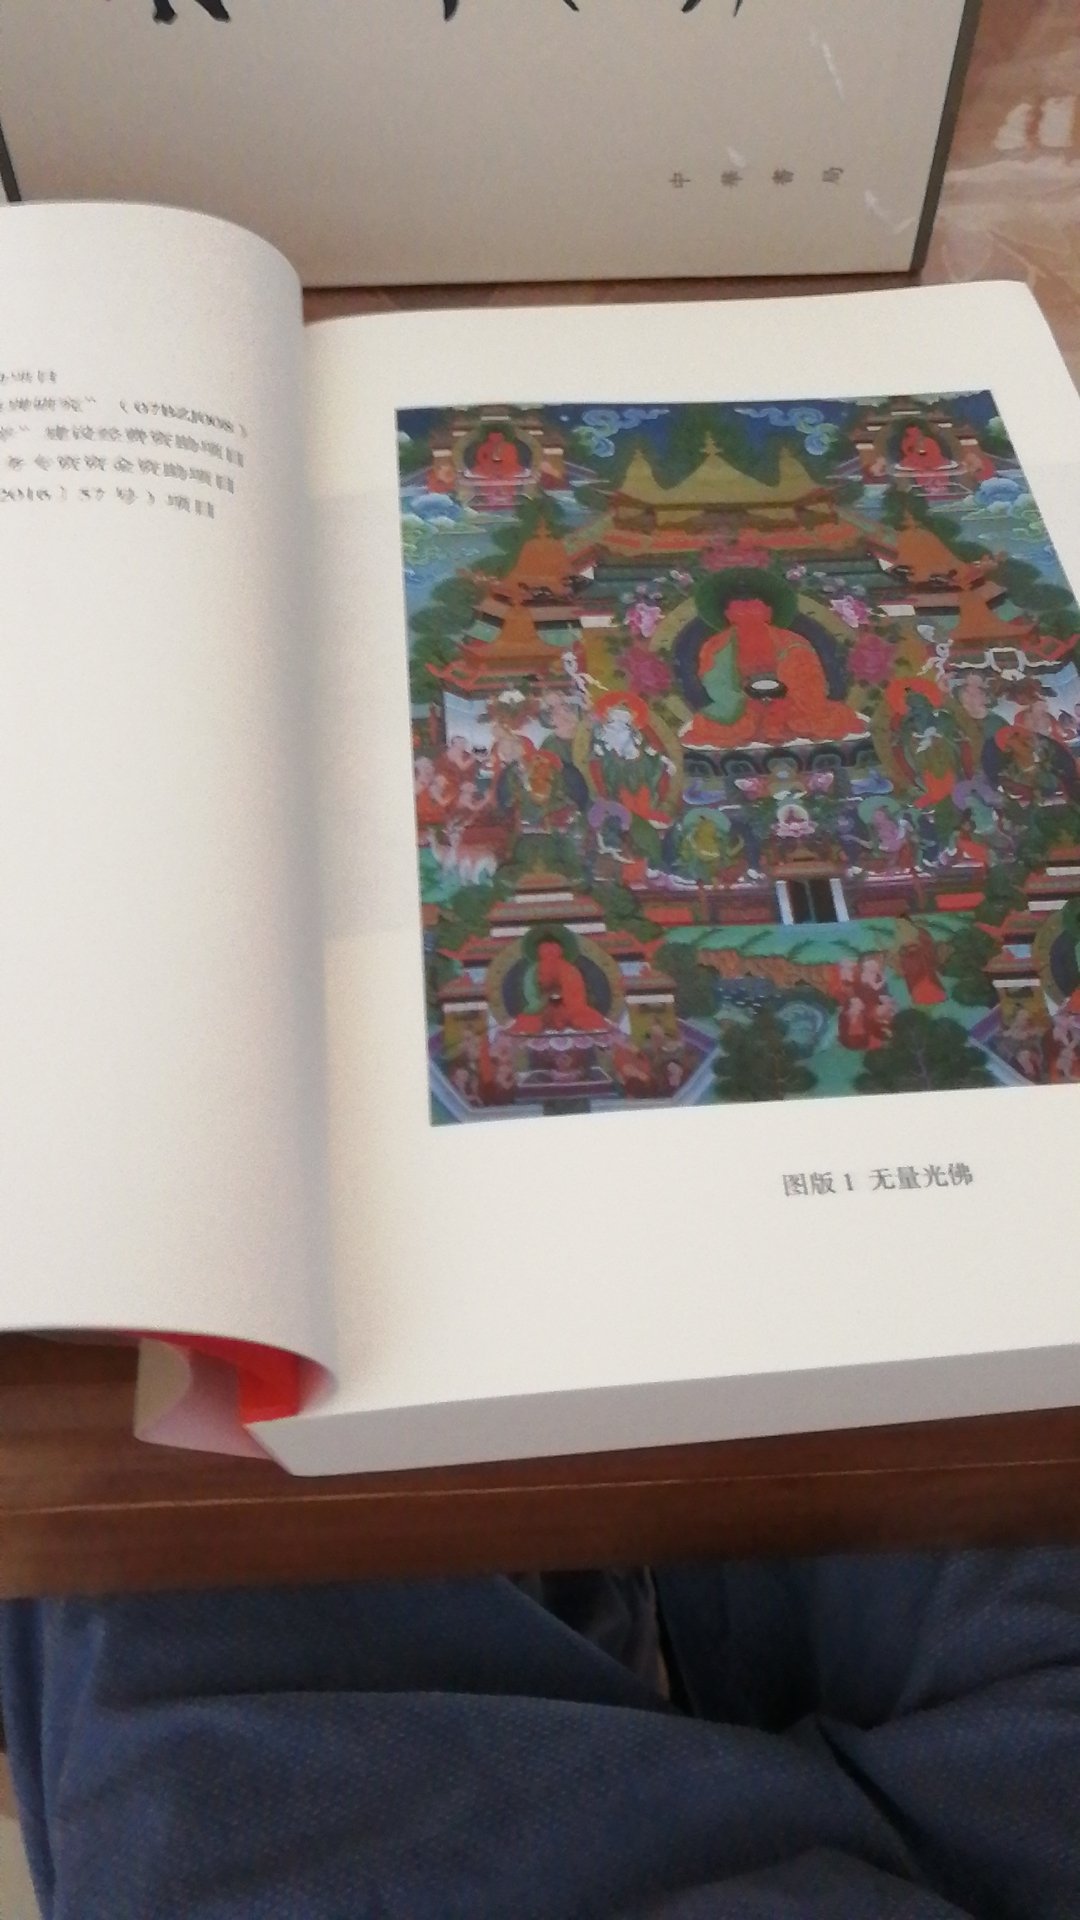 刚从色达回来，看了天葬，去了五明佛学院，藏民对宗教的虔诚令人震撼。可以说不了解藏传佛教，也就无从认识藏族文化，去那里旅游就会像盲人摸象一样！我一定要好好品读这本书，觉得积累够了，再去一次拉萨！加油！